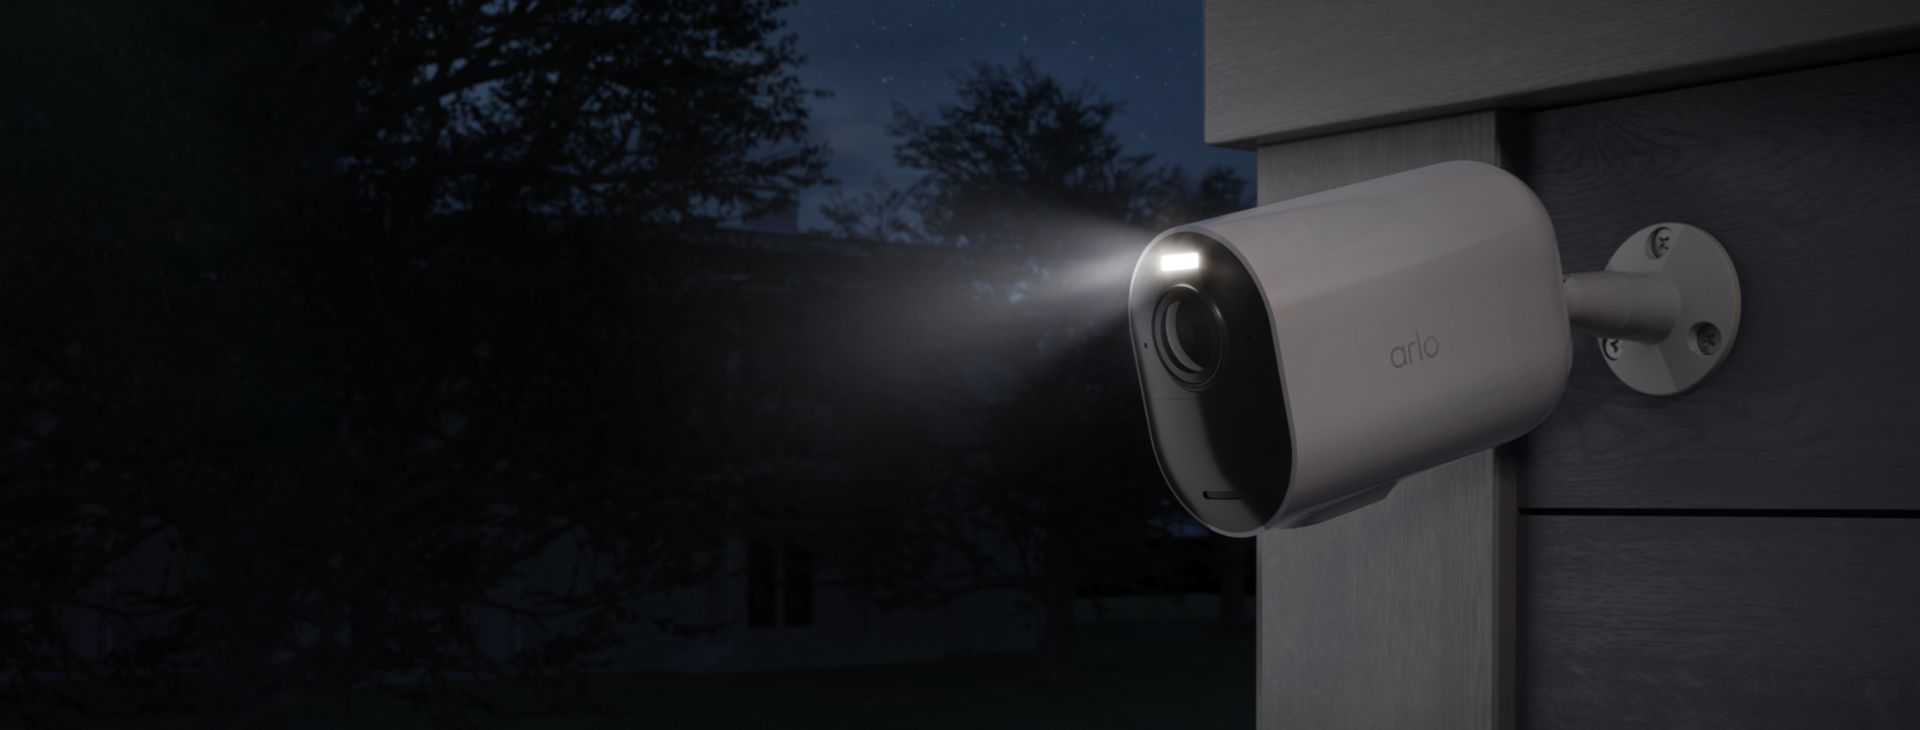 La caméra de surveillance Arlo Ultra 2 XL installée contre un mur dans la nuit avec le projecteur allumé.